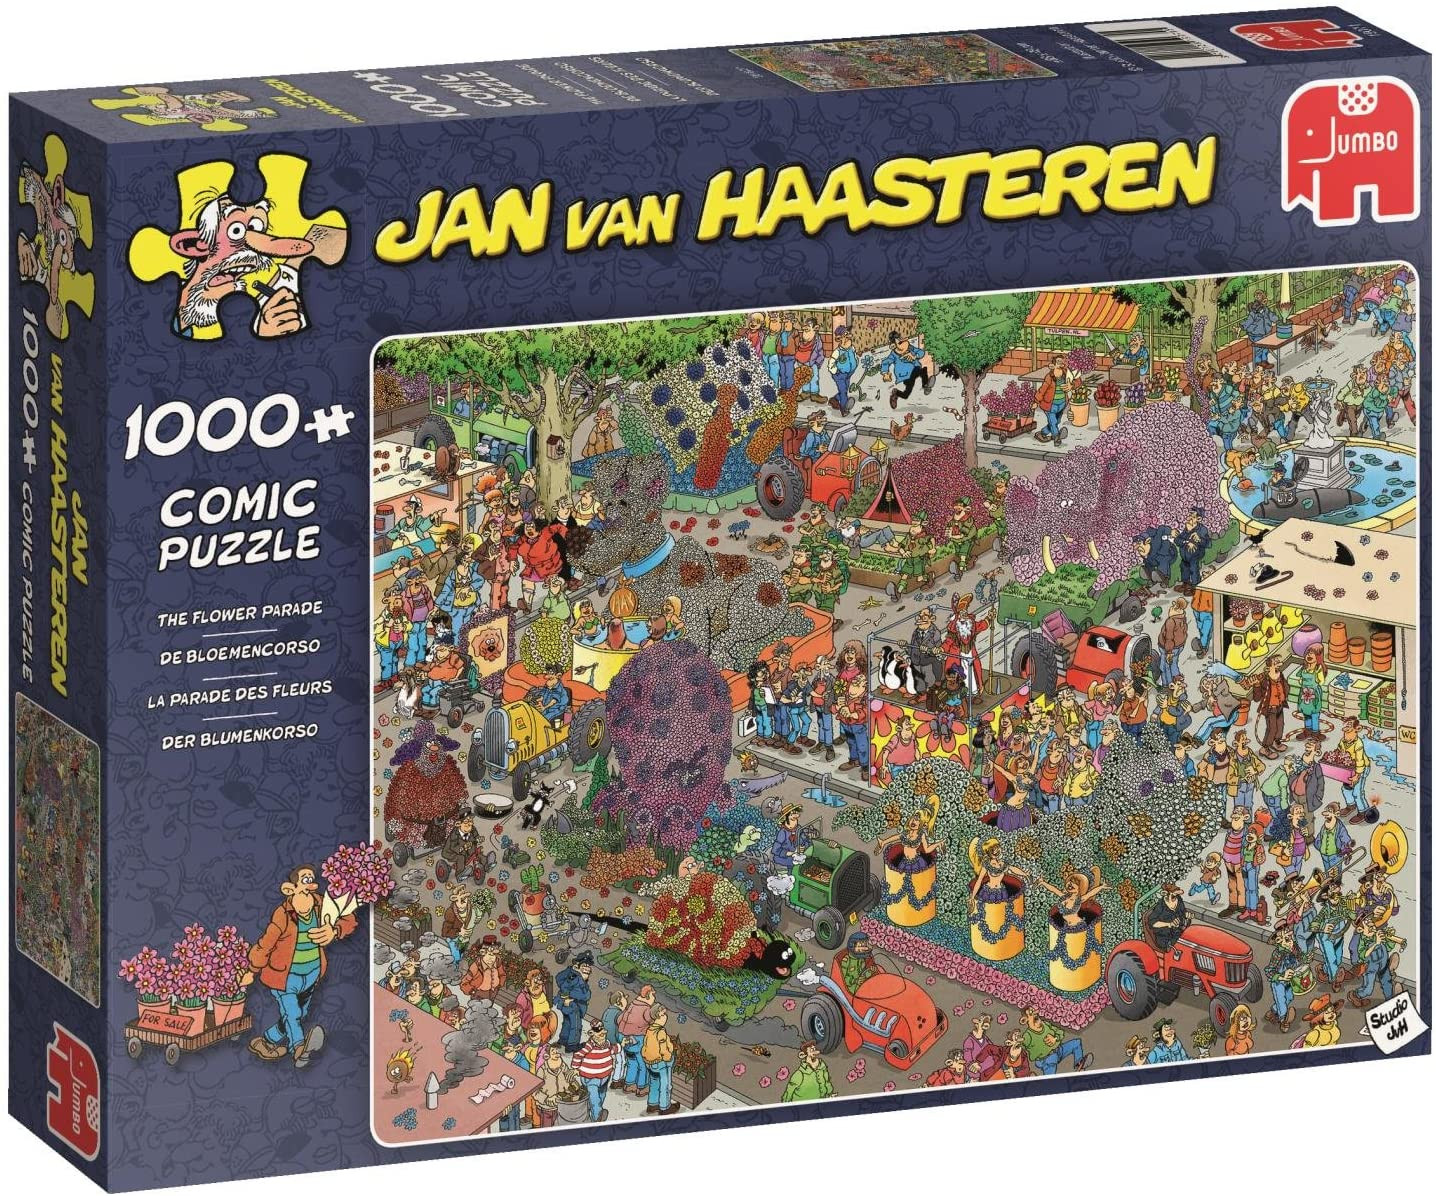 Puzzle 1000 pzs. Jan van Haasteren, The Flower Parade